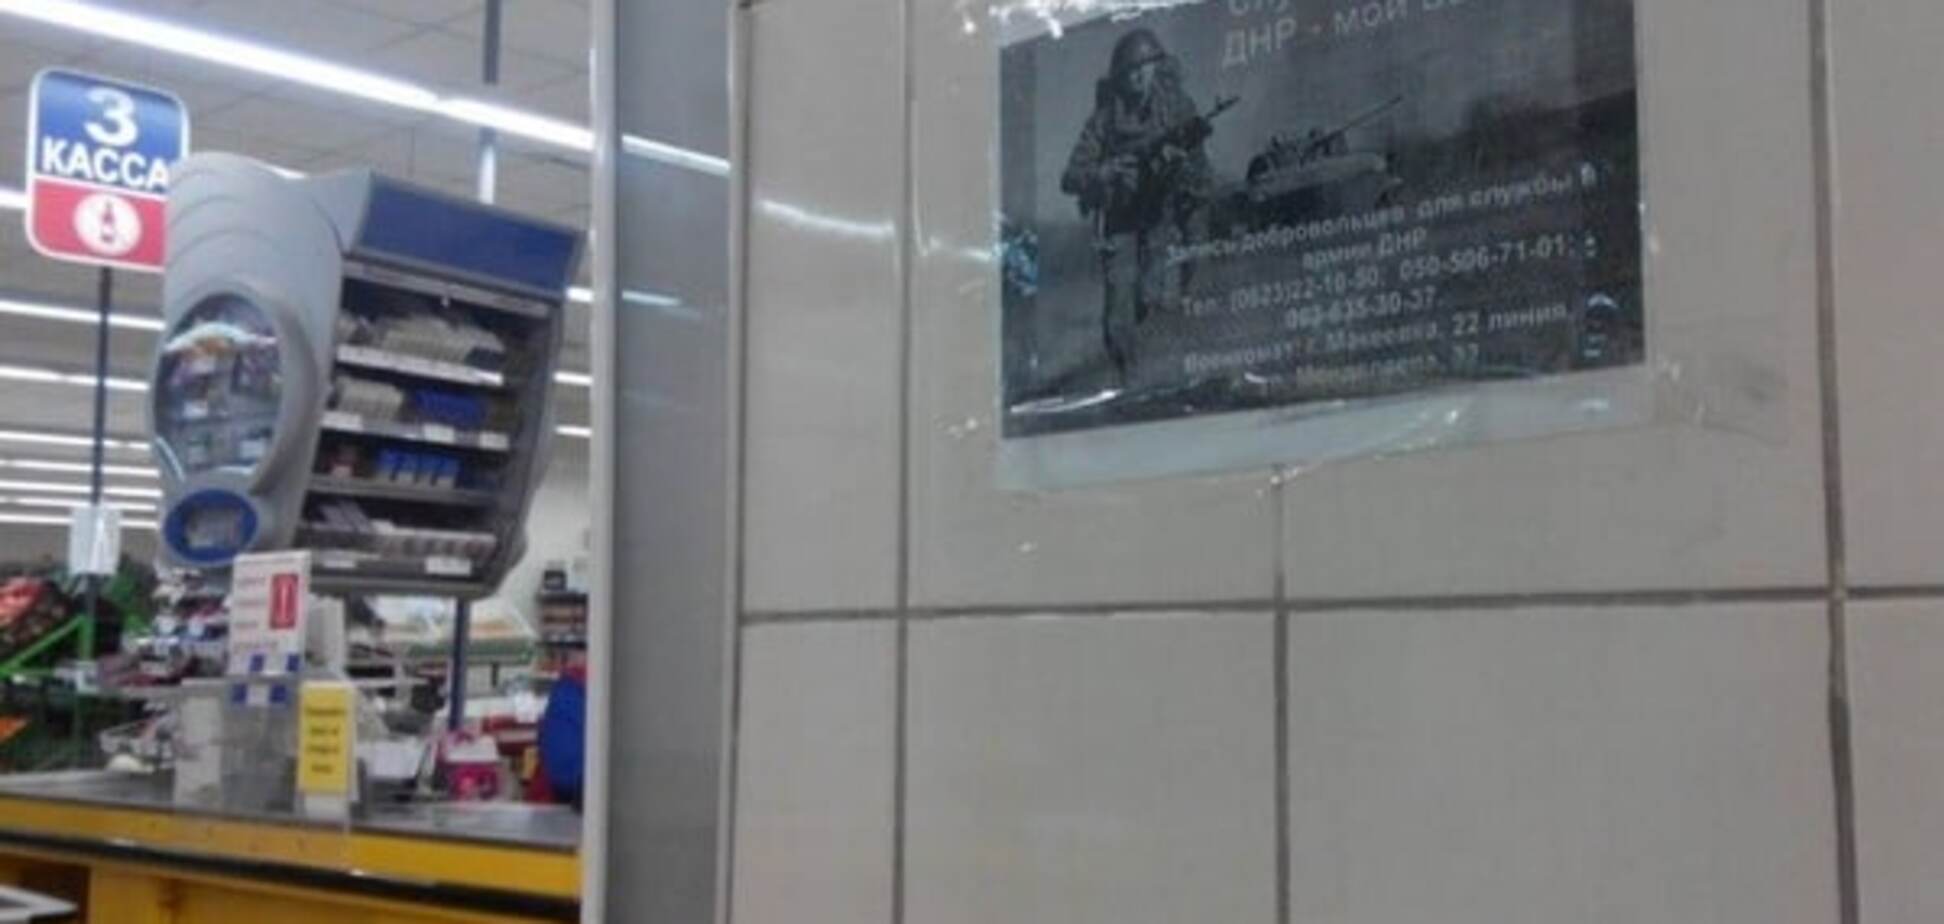 'Купить террориста': в армию 'ДНР' зазывают в супермаркетах. Фотофакт